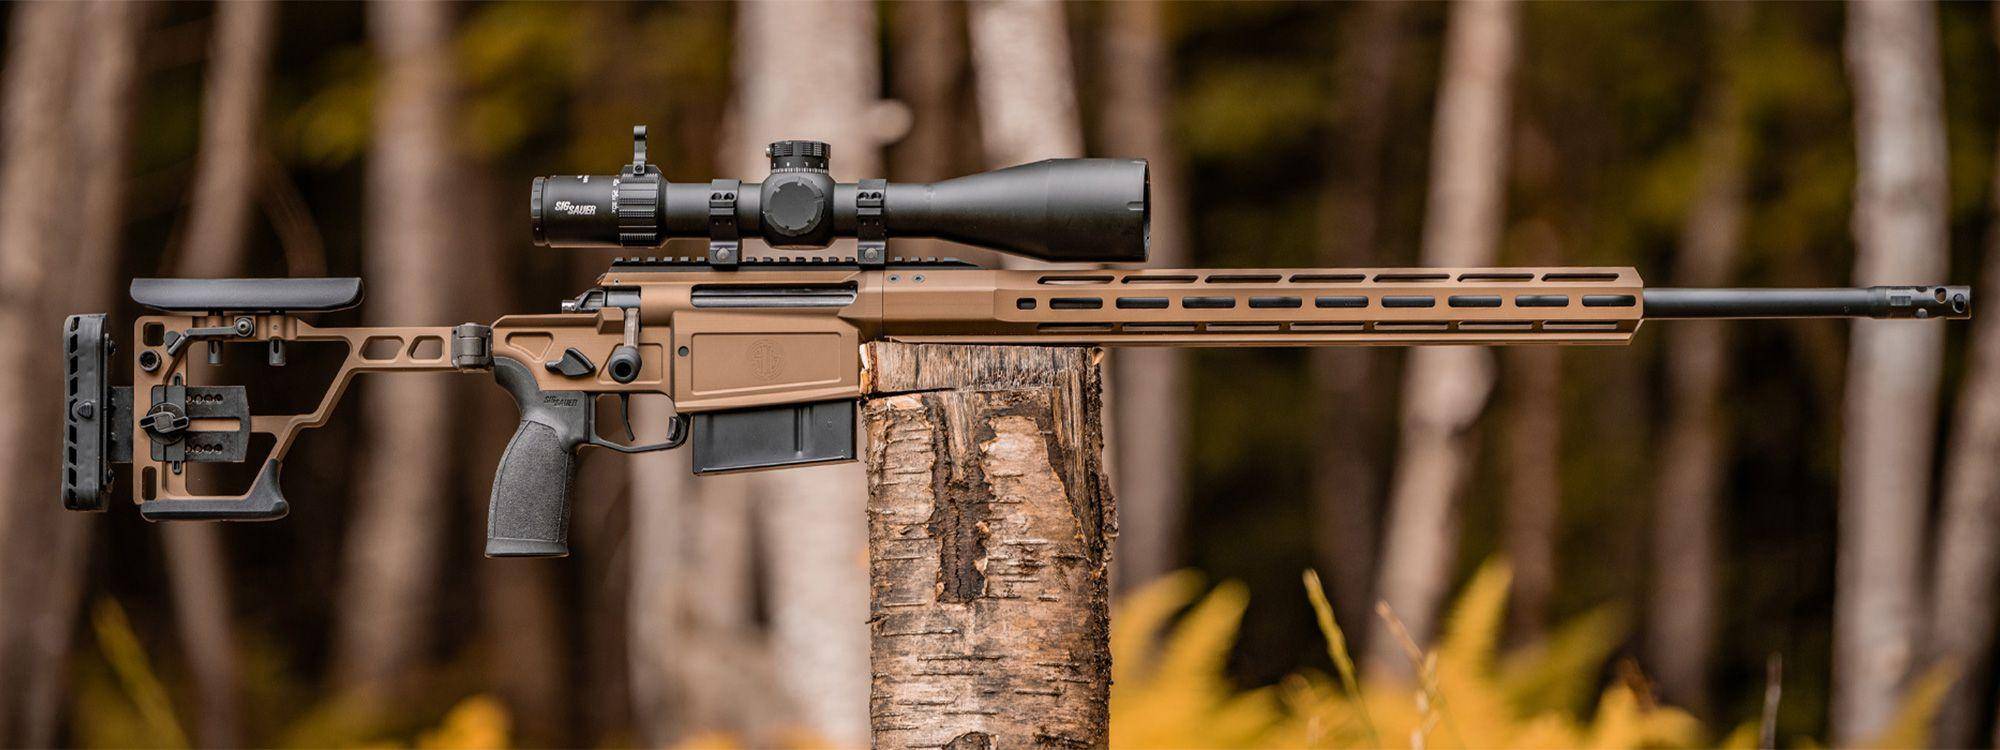 2023 年新品步枪:cross magnum,一款紧凑,轻便的精确狩猎步枪